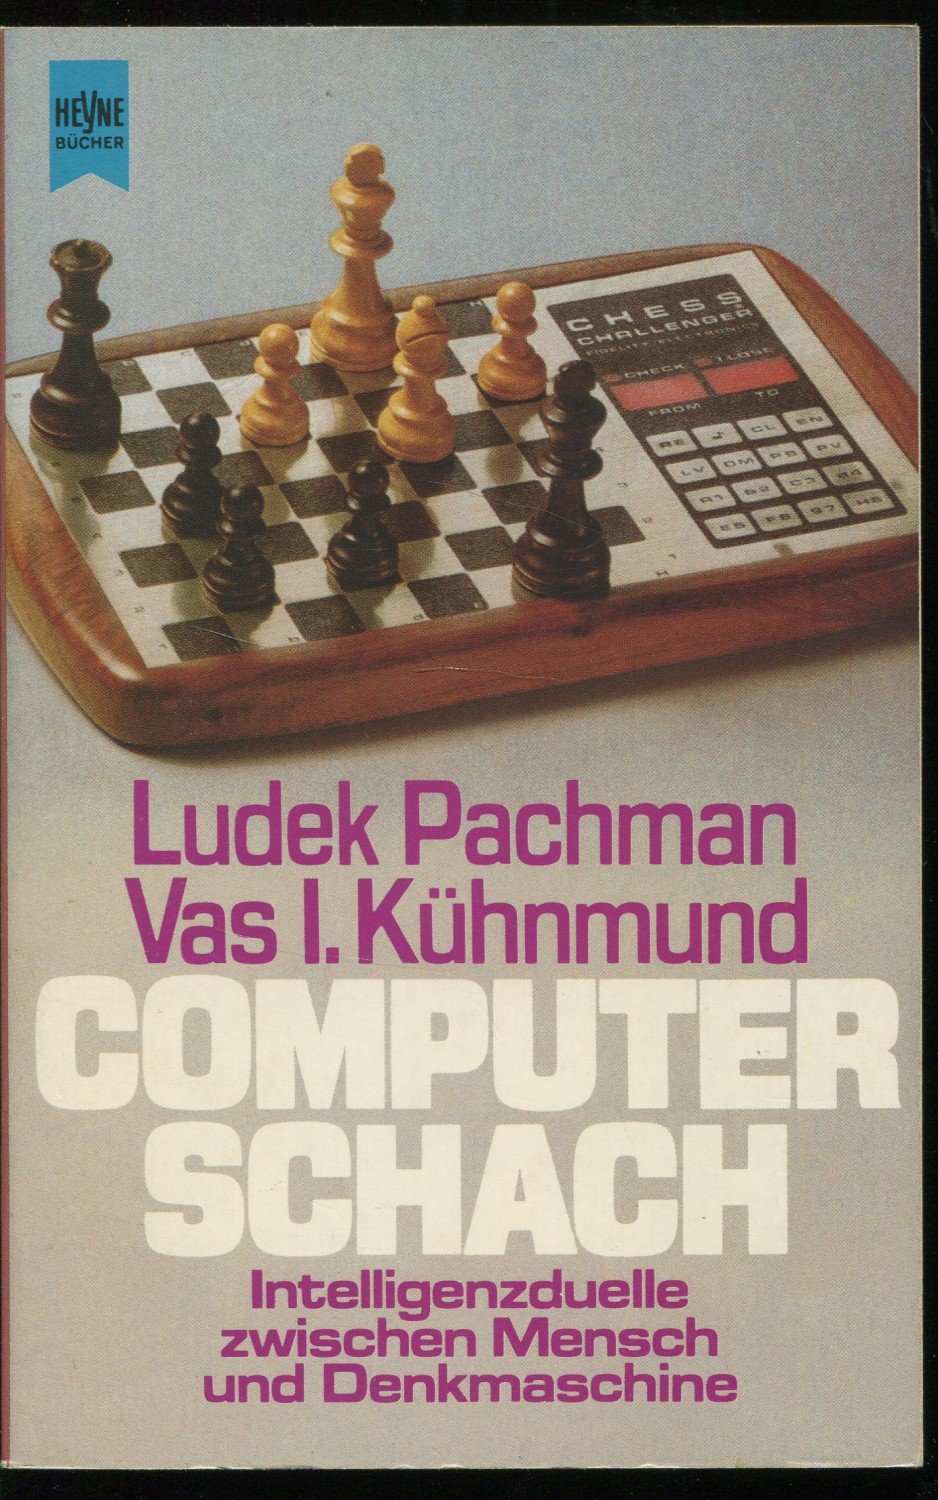 Computer Schach.“ (Pachman, Ludek und Vas I) – Buch gebraucht kaufen